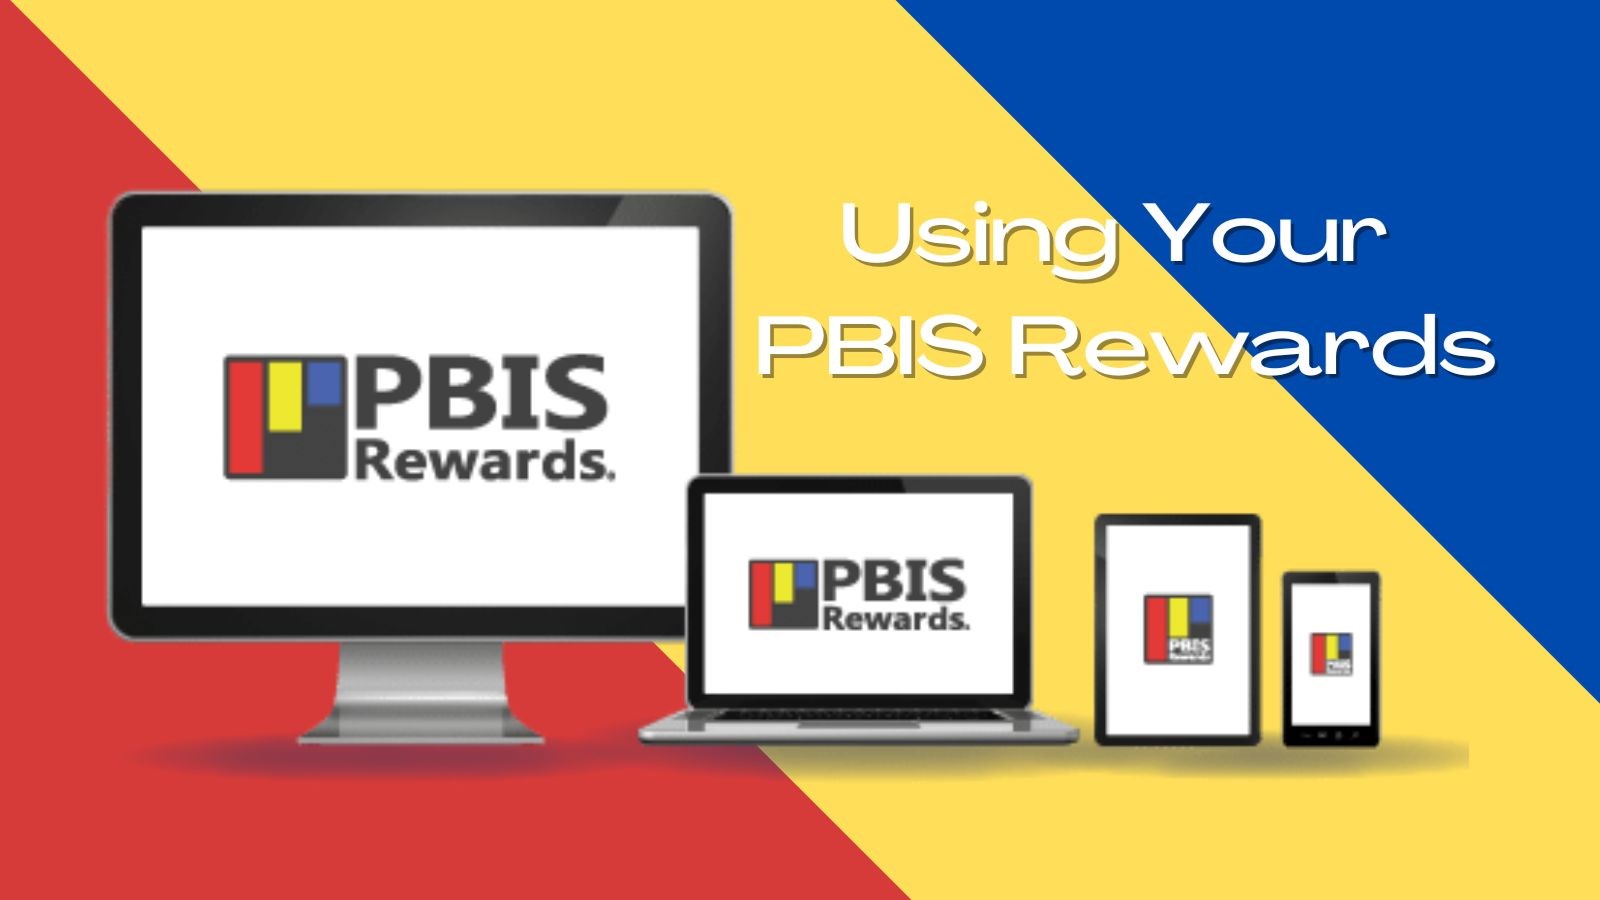 Using Your PBIS Rewards